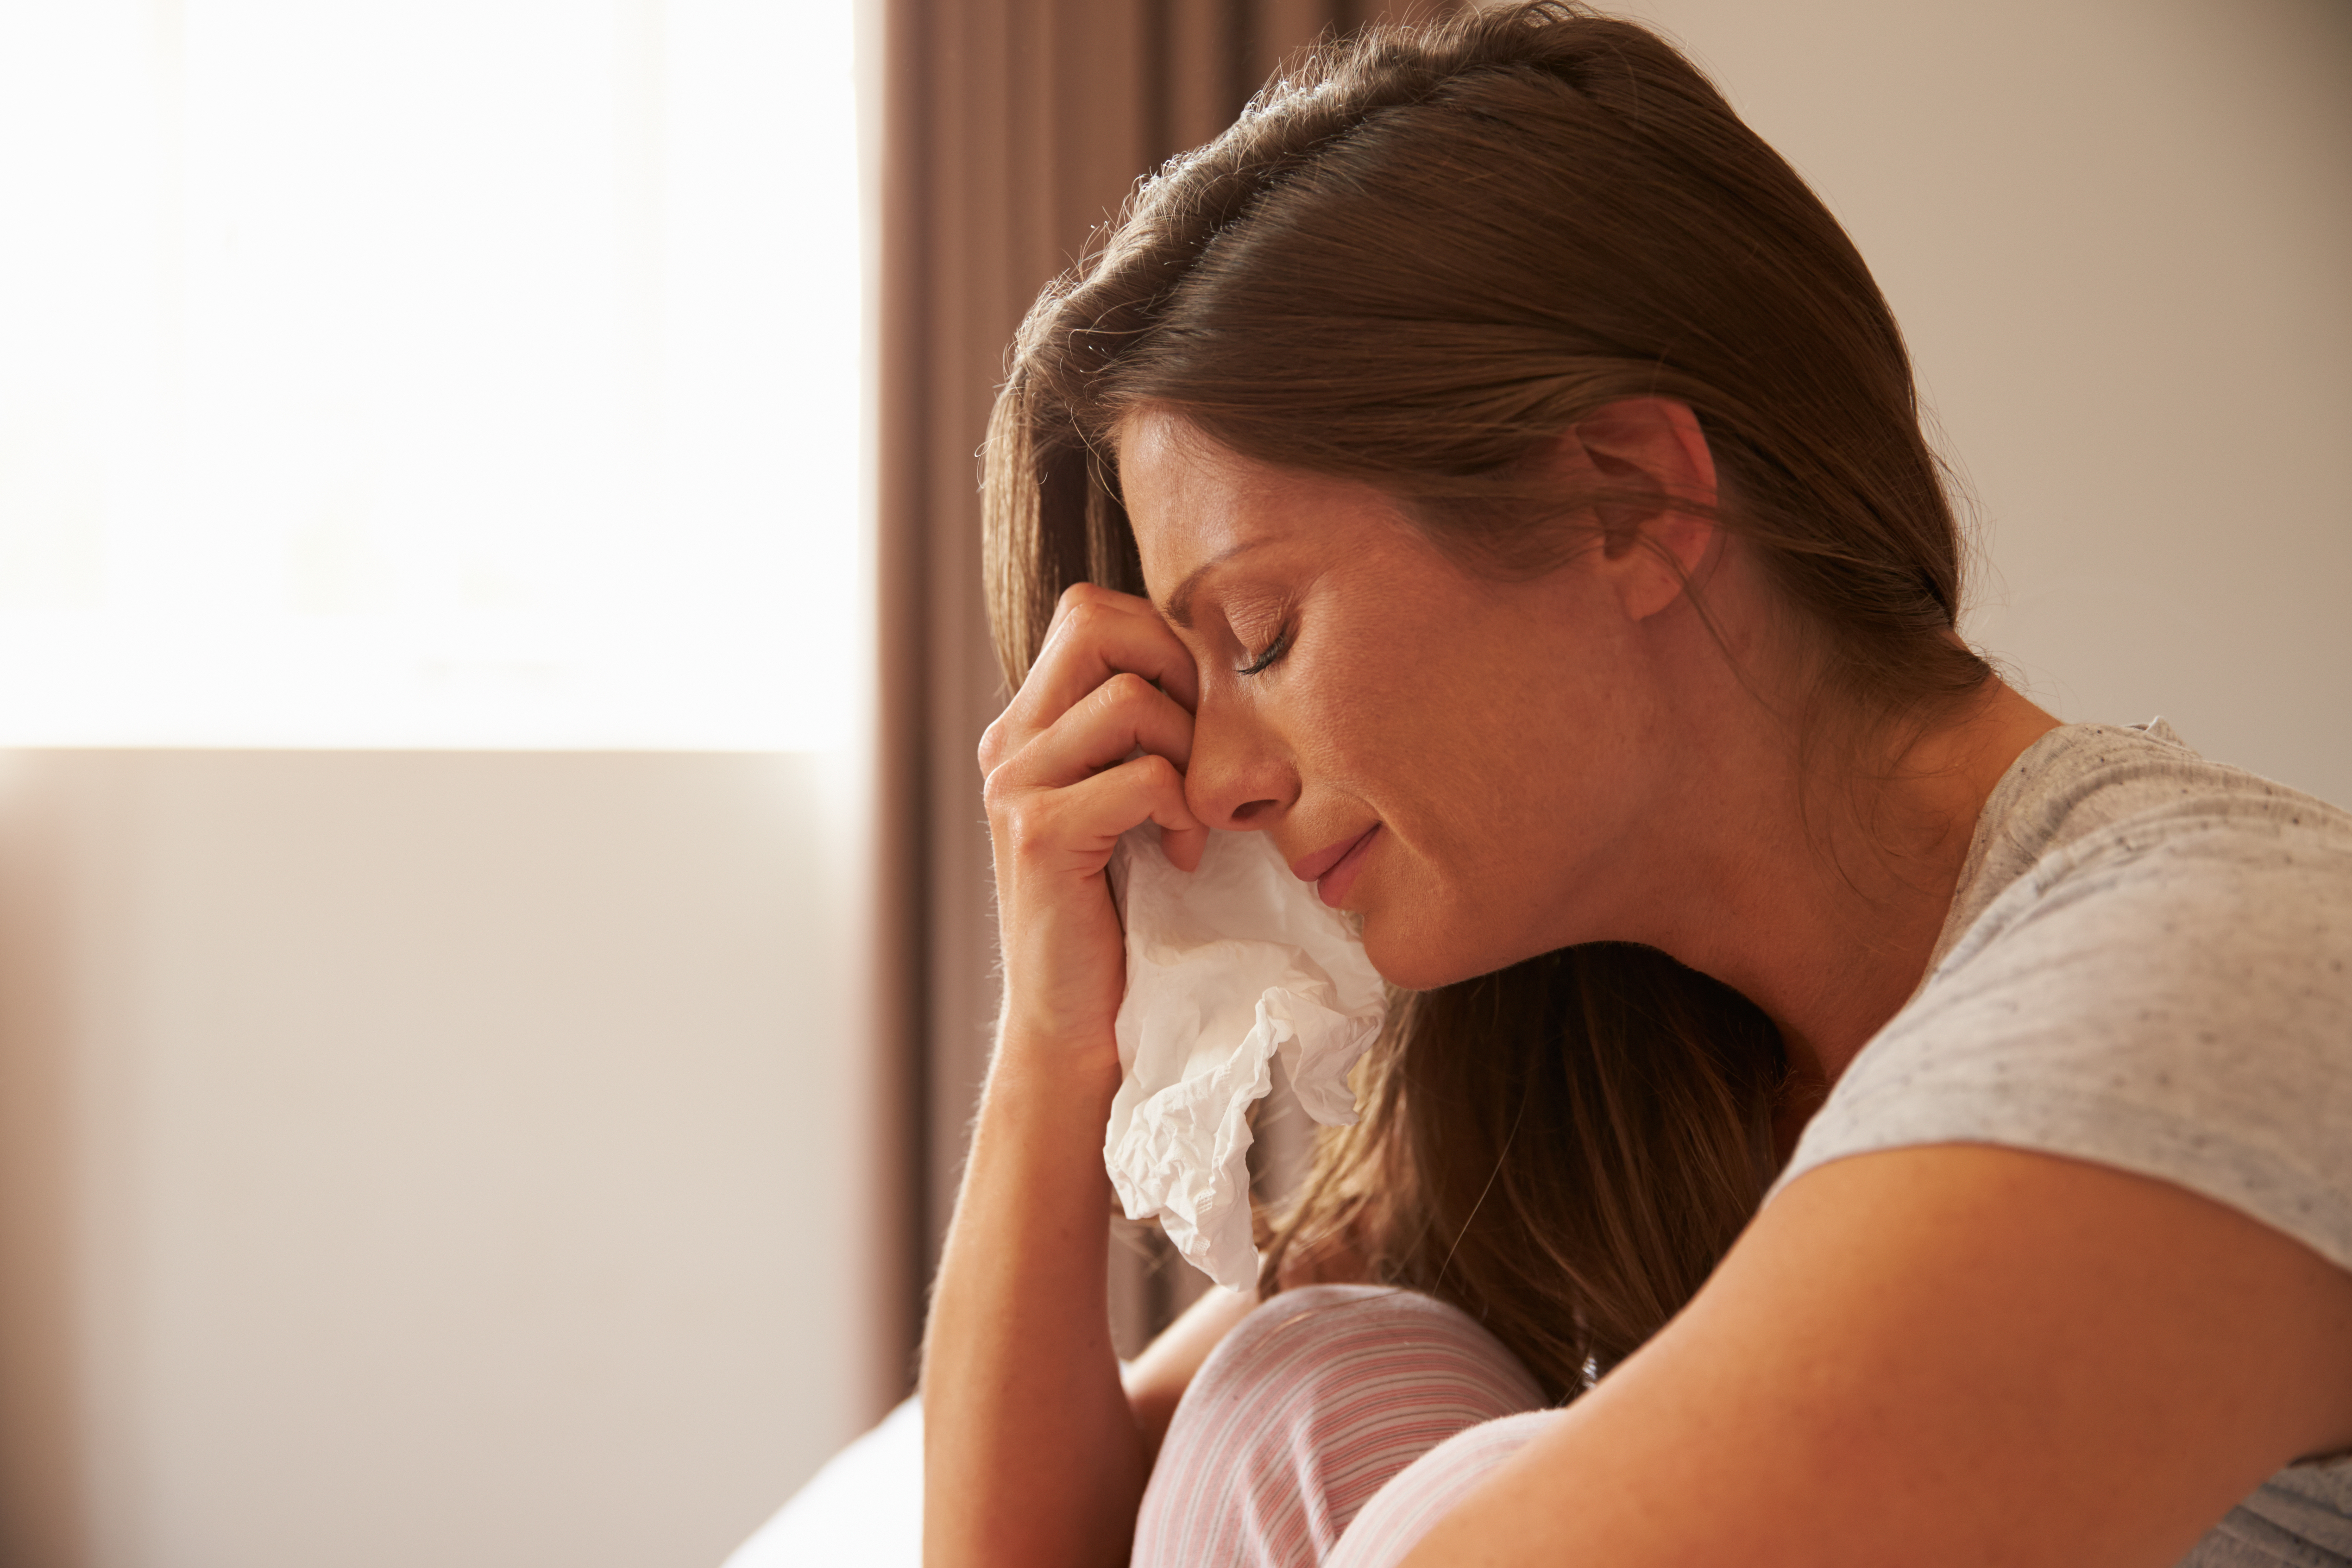 Une femme qui pleure en essuyant ses larmes avec un mouchoir en papier | Source : Shutterstock